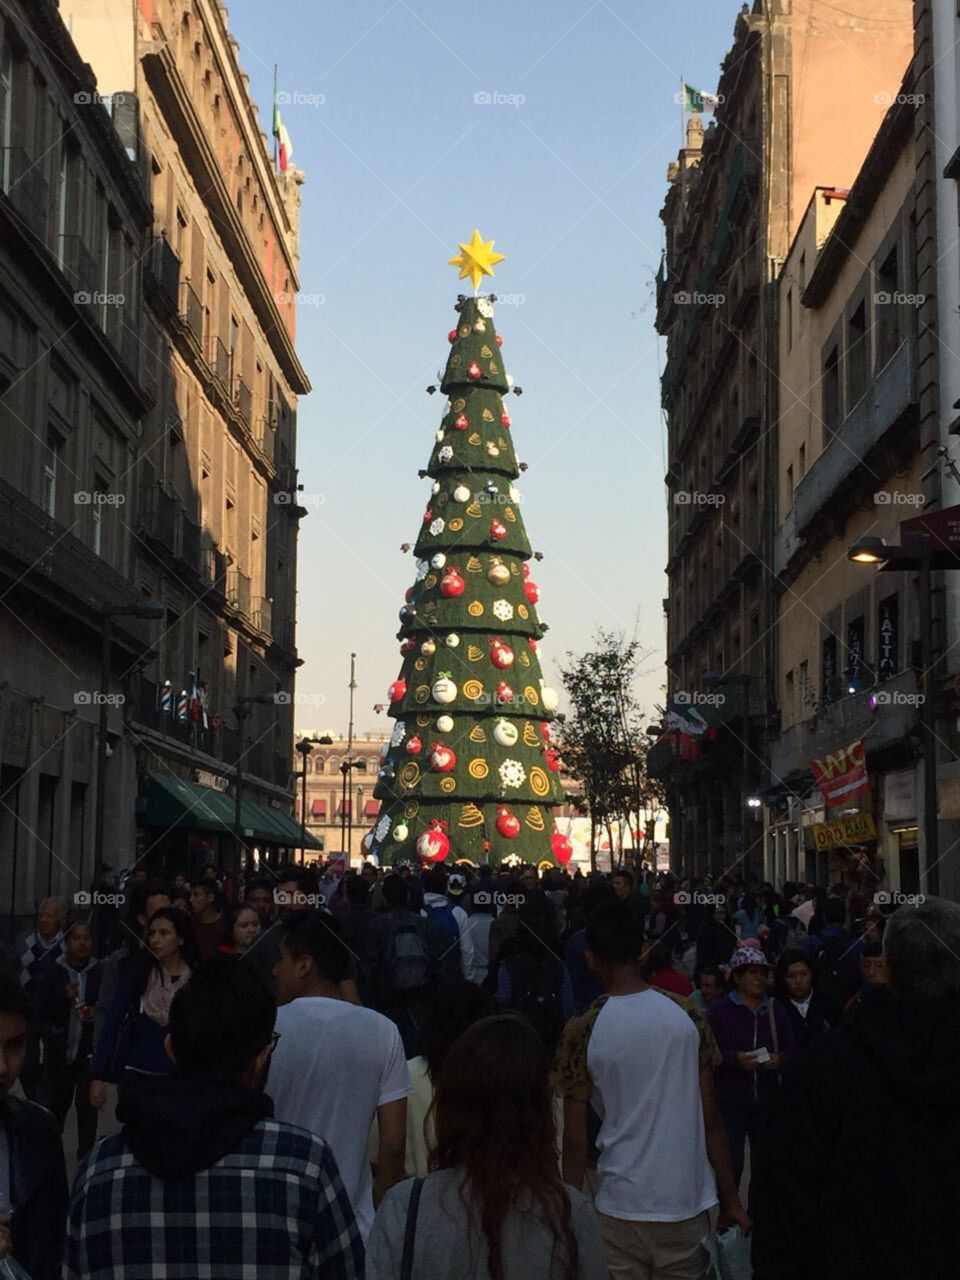 Plaza Christmas tree 